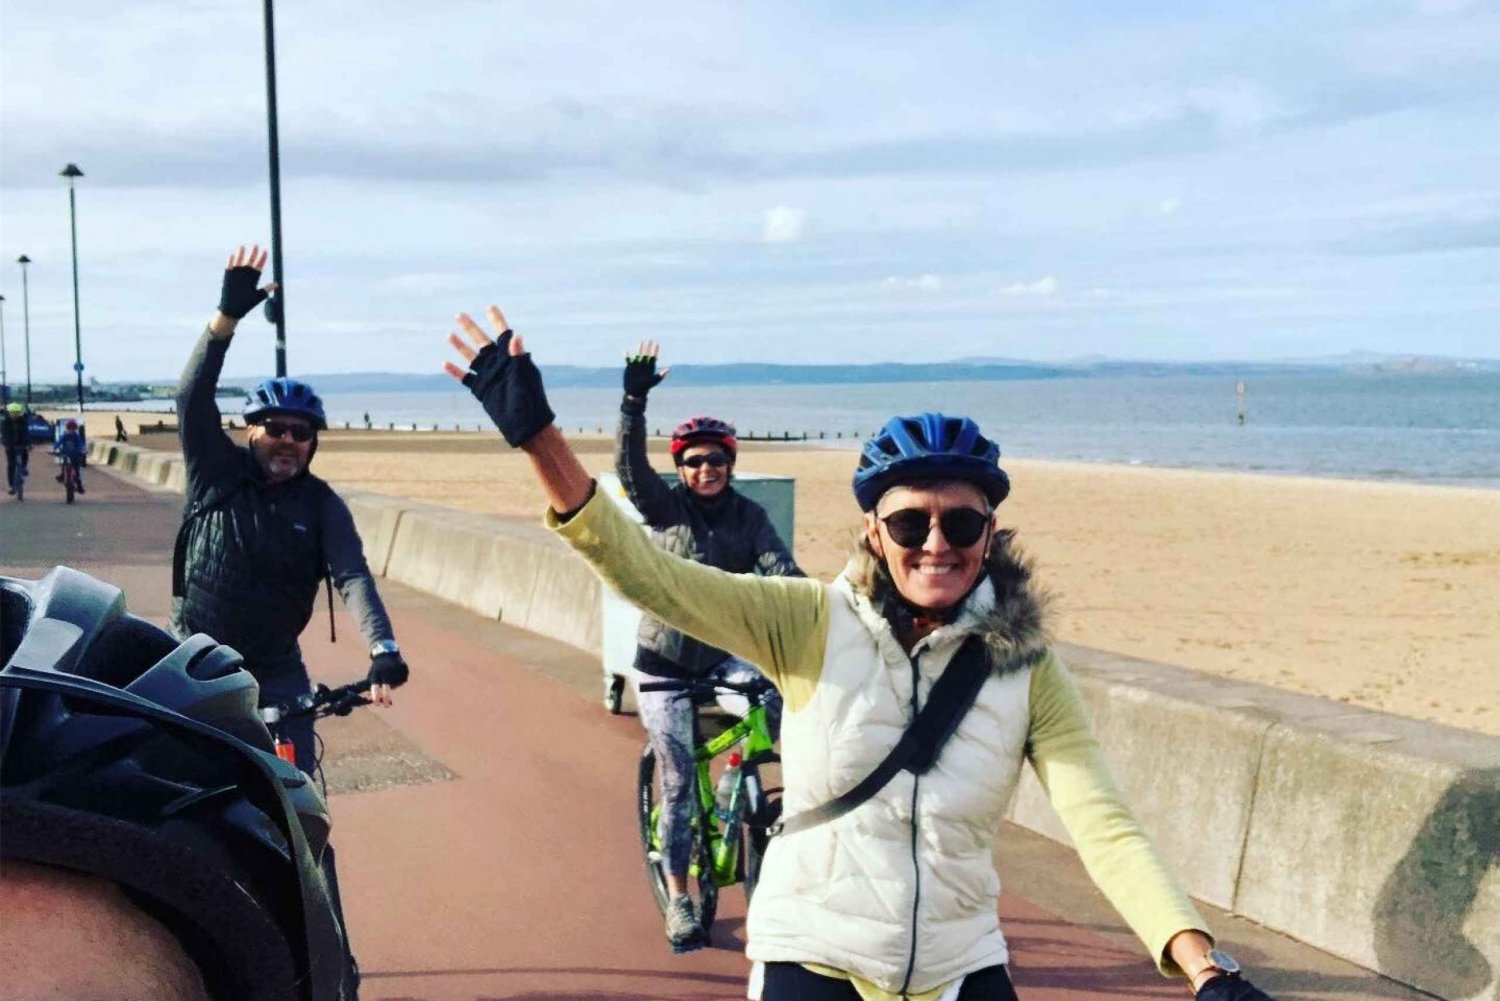 Edimburgo: passeio de bicicleta de 20 milhas